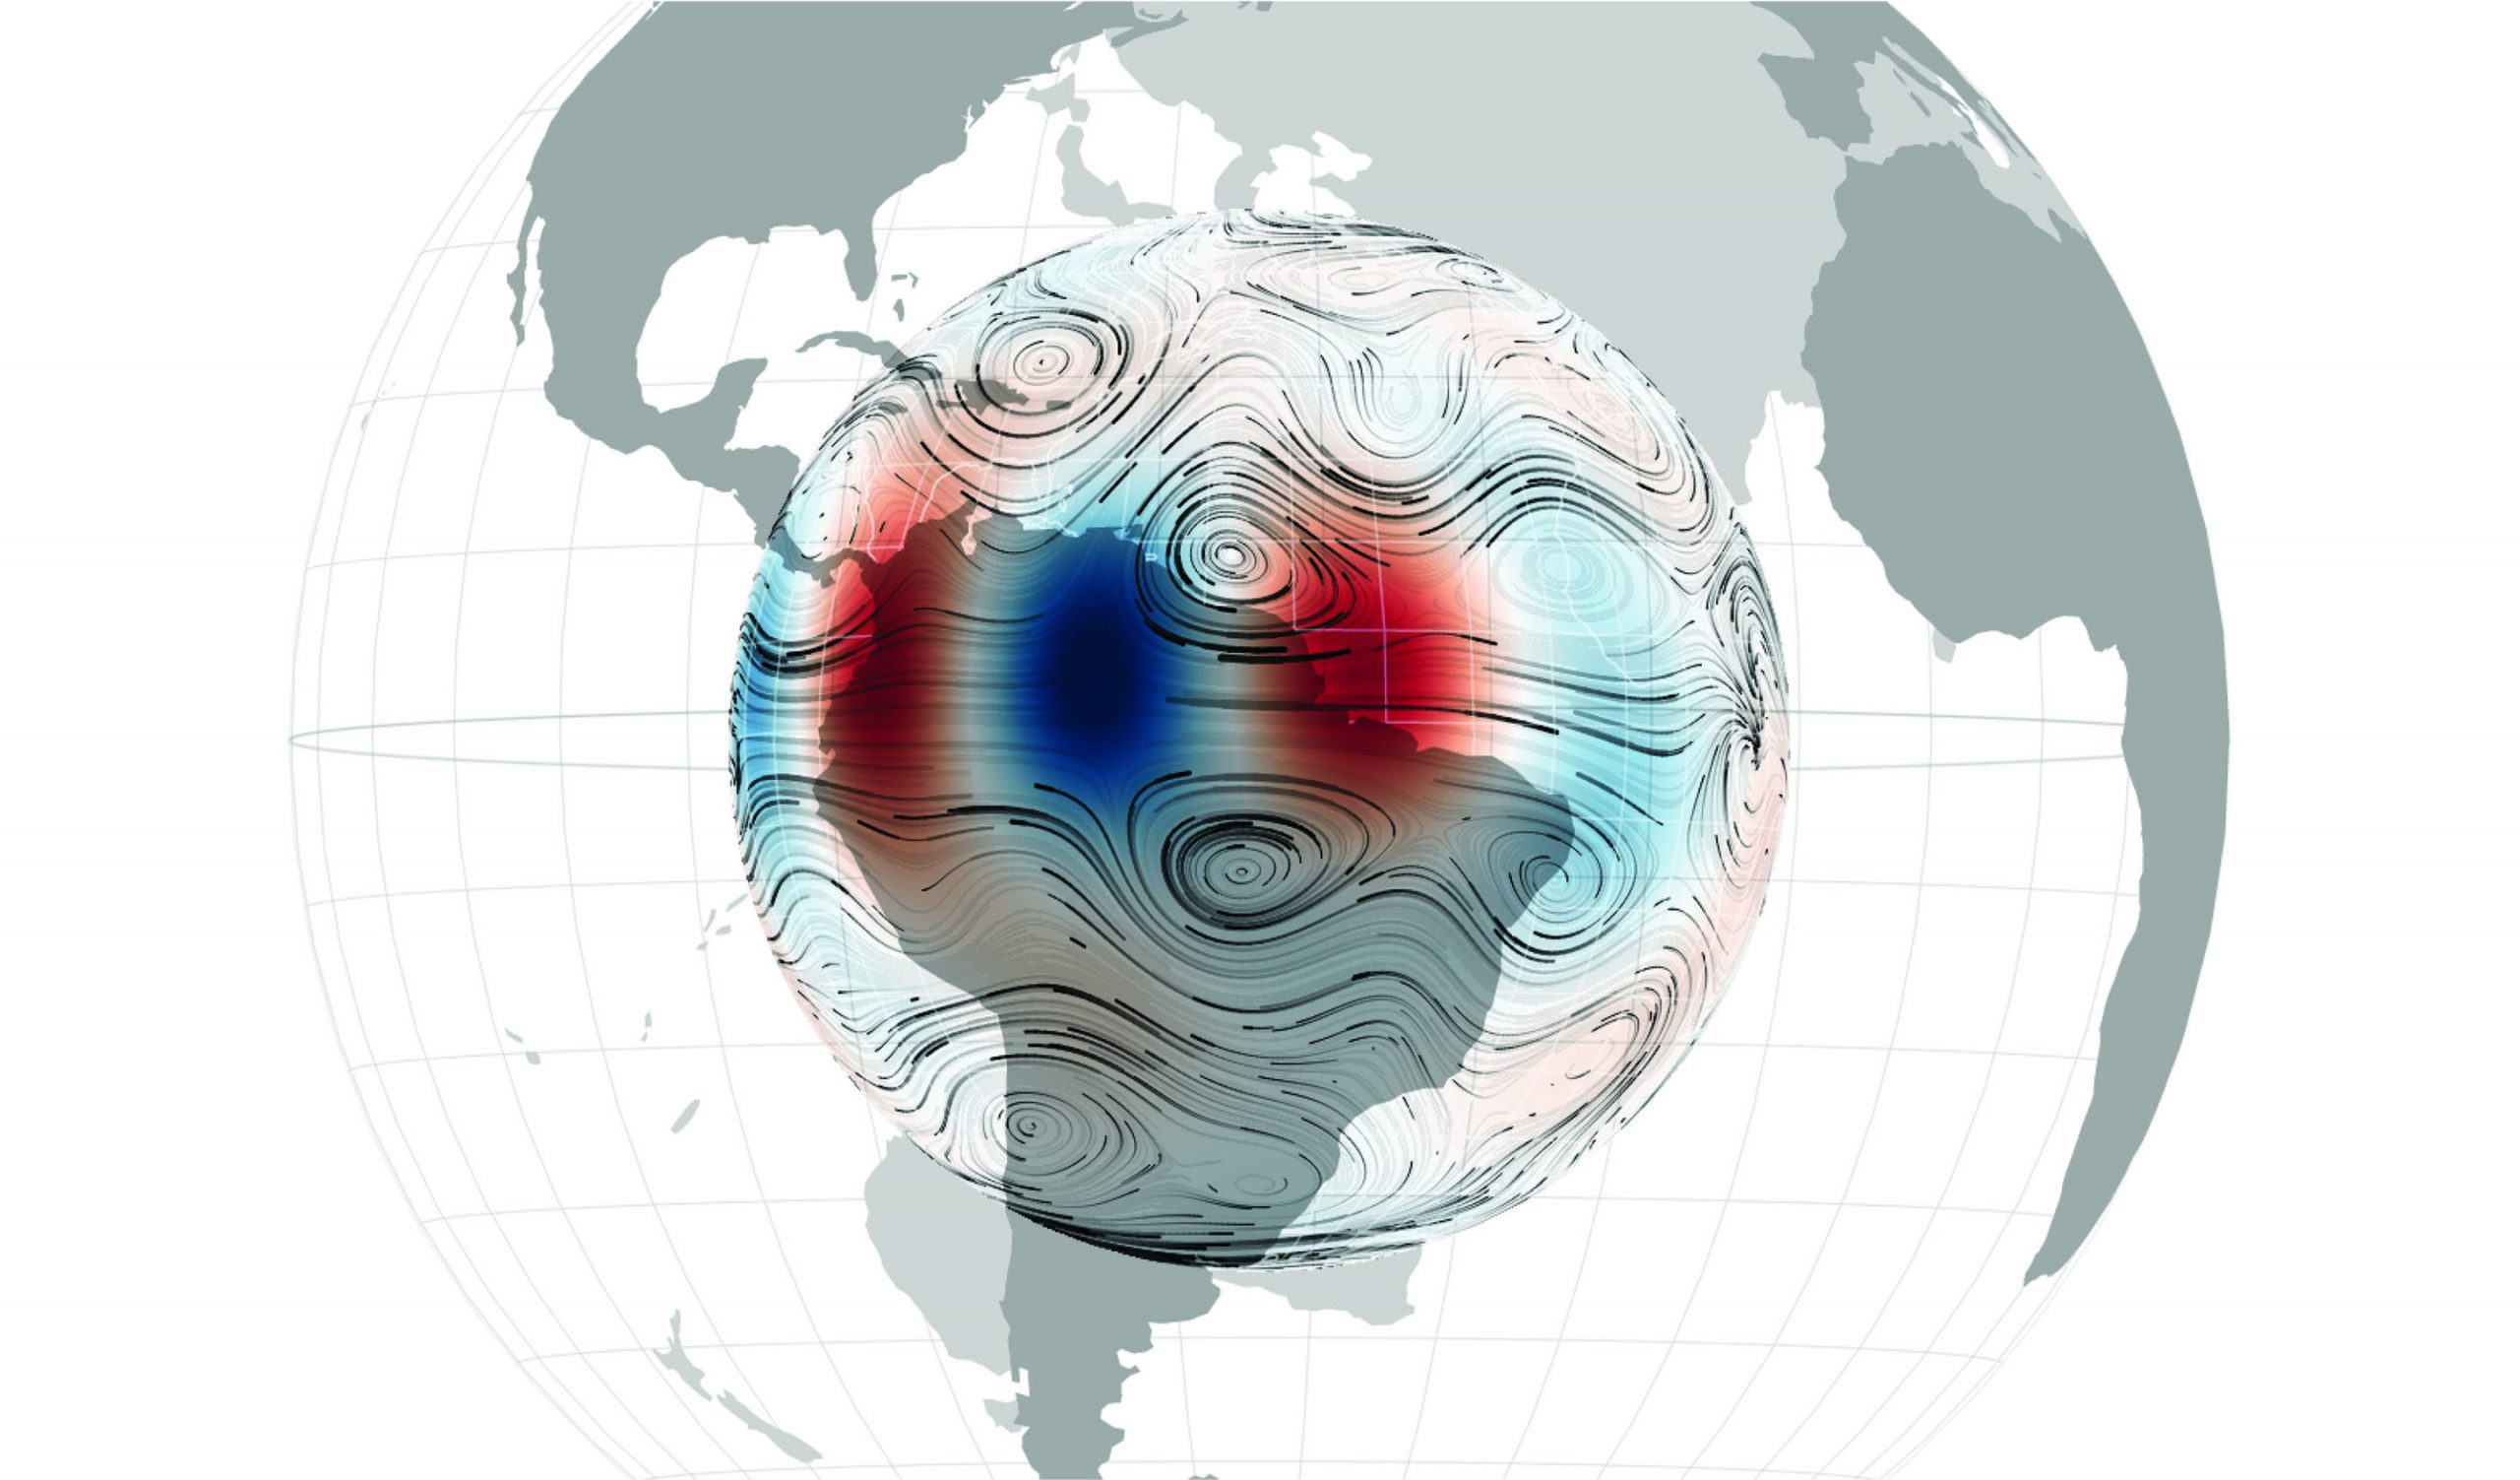 Волнообразные течения на поверхности внешнего ядра Земли и связанные с ними возмущения магнитного поля